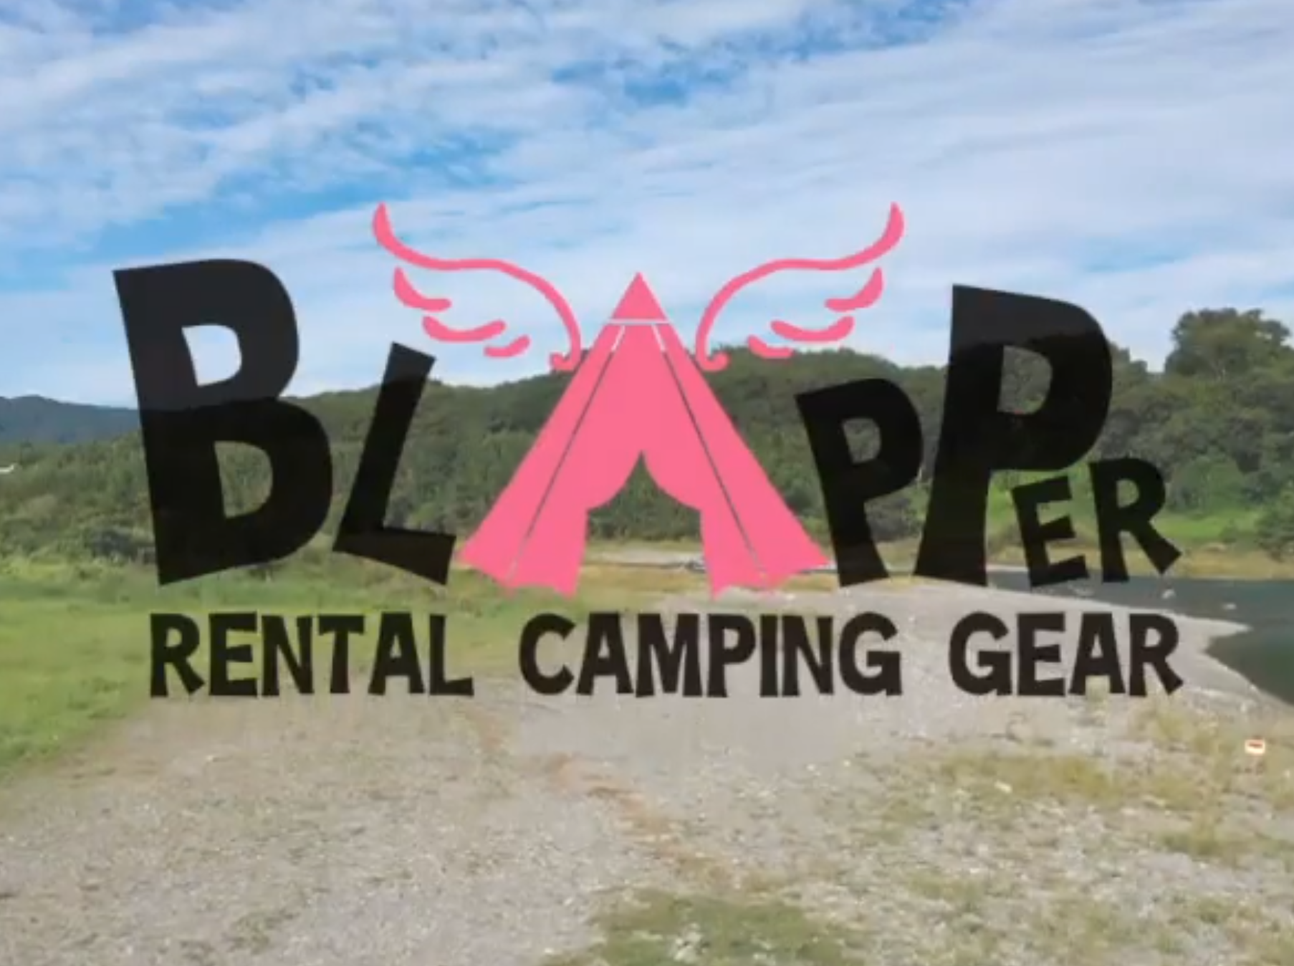 寄居町周辺エリアで手ぶらでバーベキュー キャンプをサポートする Blapper ブラッパー がスタートです あらかわプレス